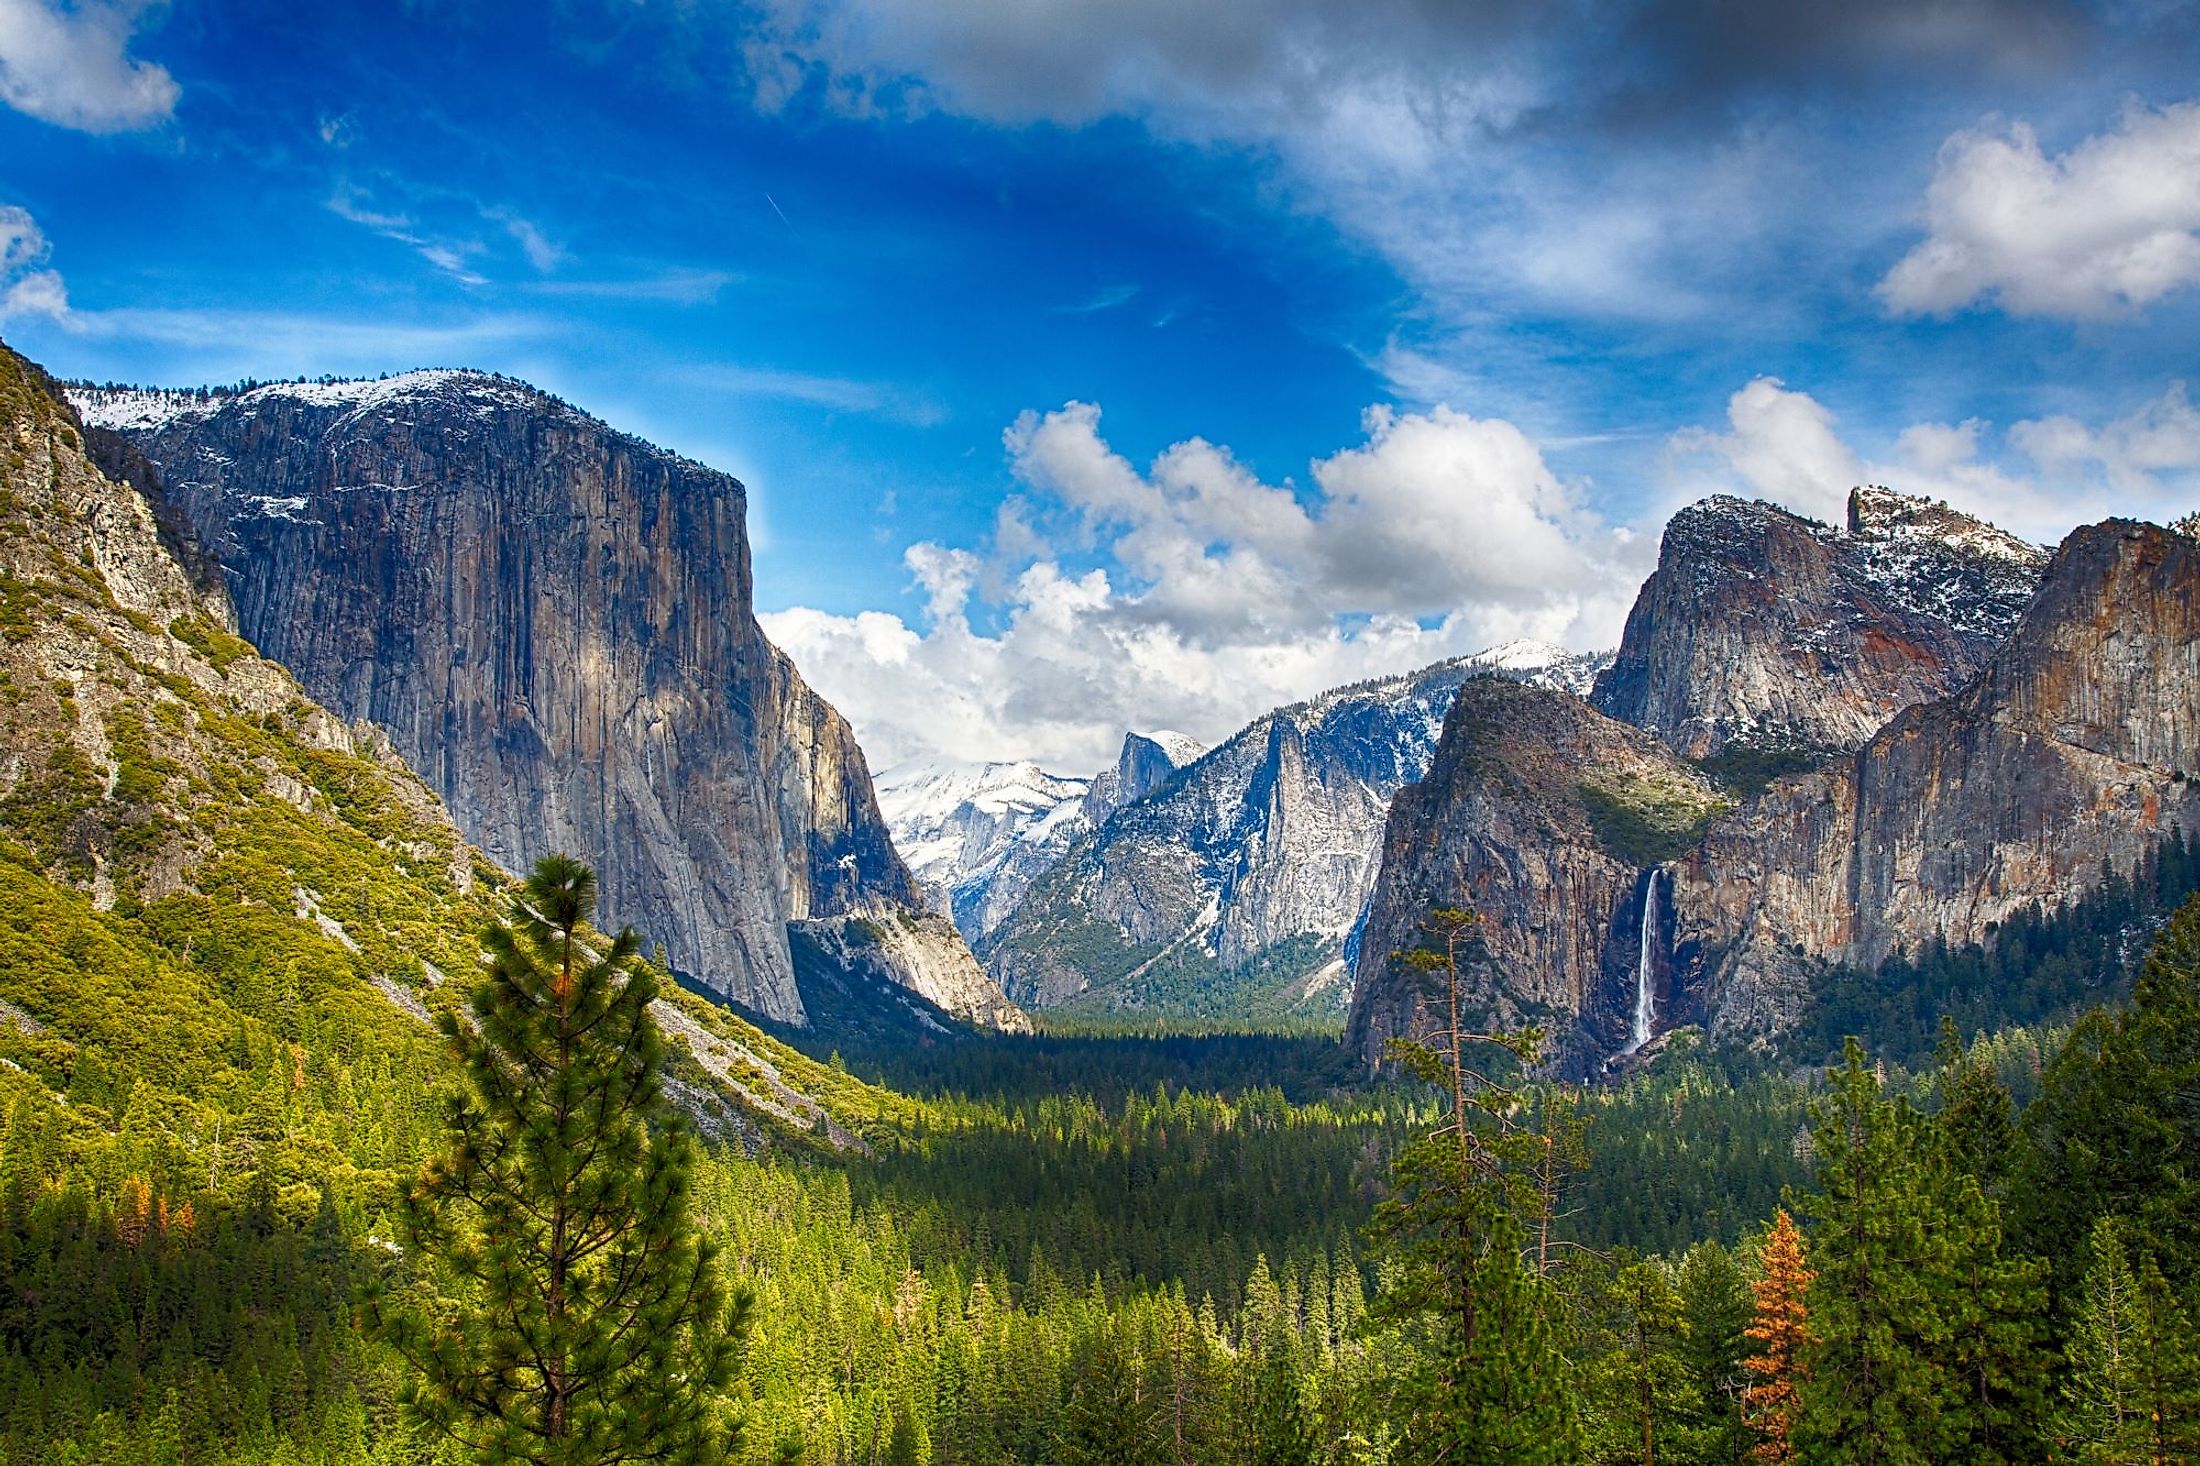 El Capitan in Yosemite Valley, Yosemite National Park, California